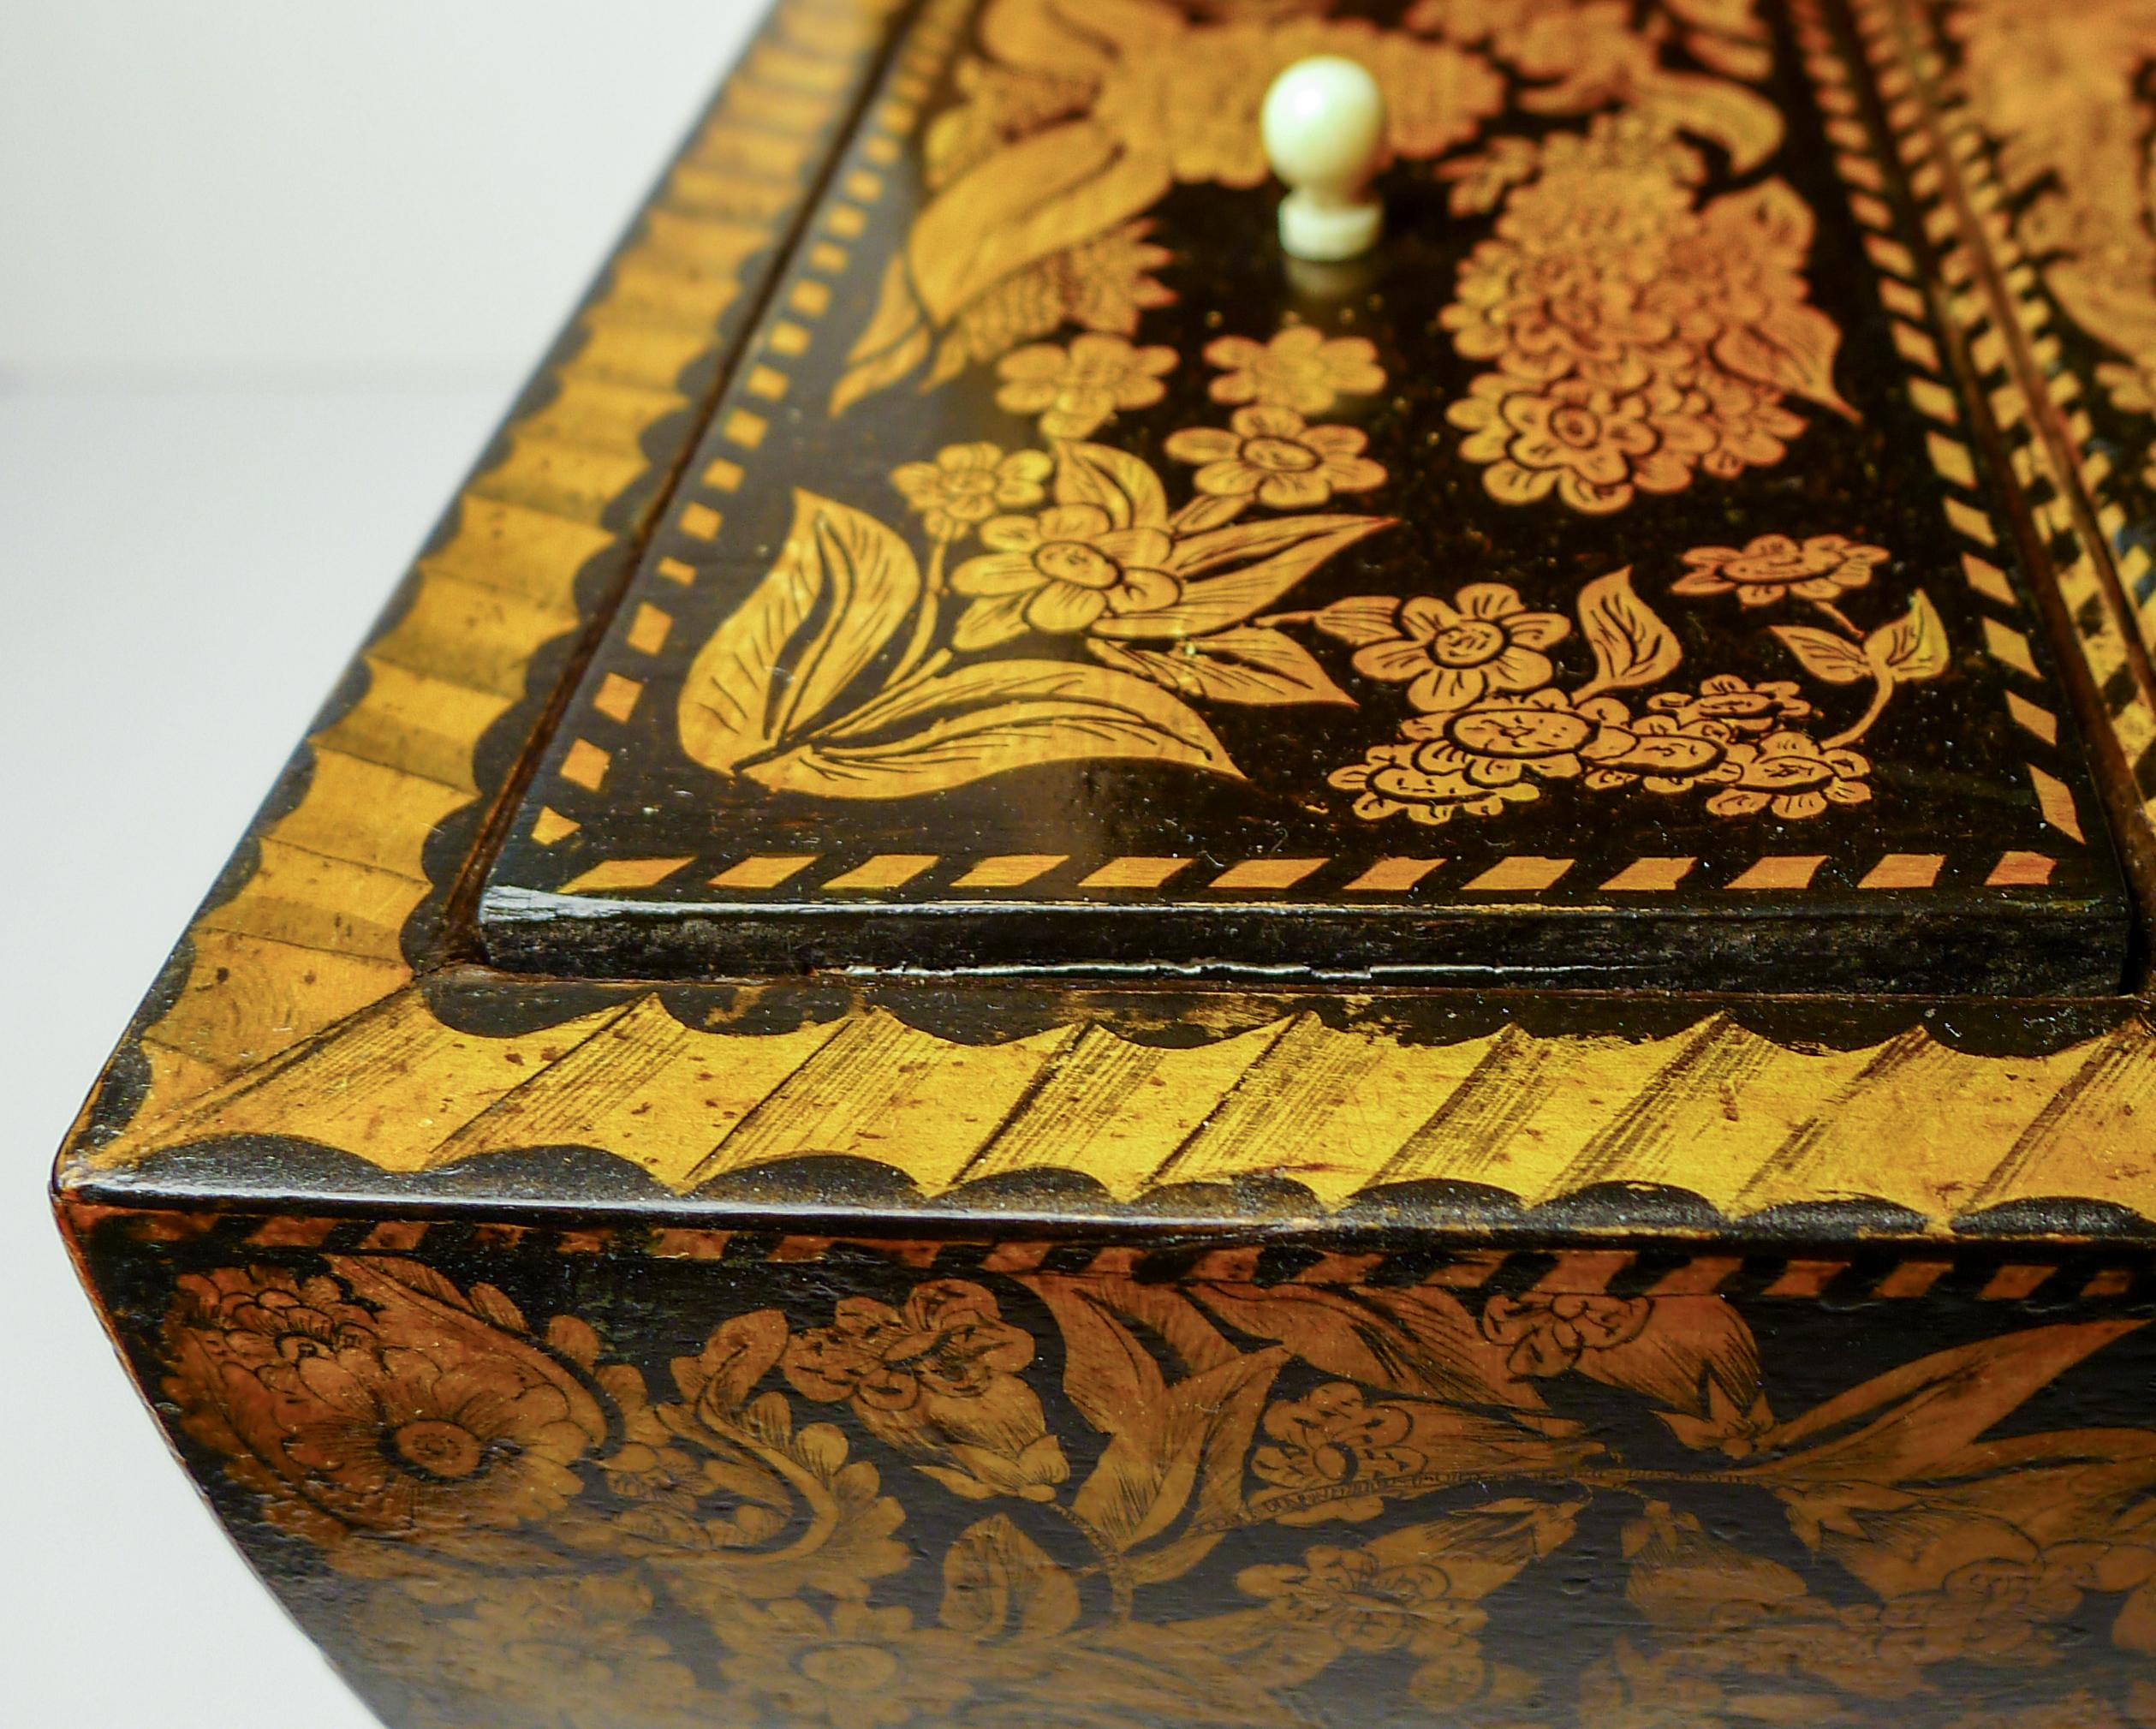 Un exemple tout simplement magnifique et grandiose d'une boîte à thé en plume de style Régence datant de 1820.

Le caddy repose sur ses grands pieds de pattes de lion en bronze doré d'origine et les côtés conservent les poignées d'anneau